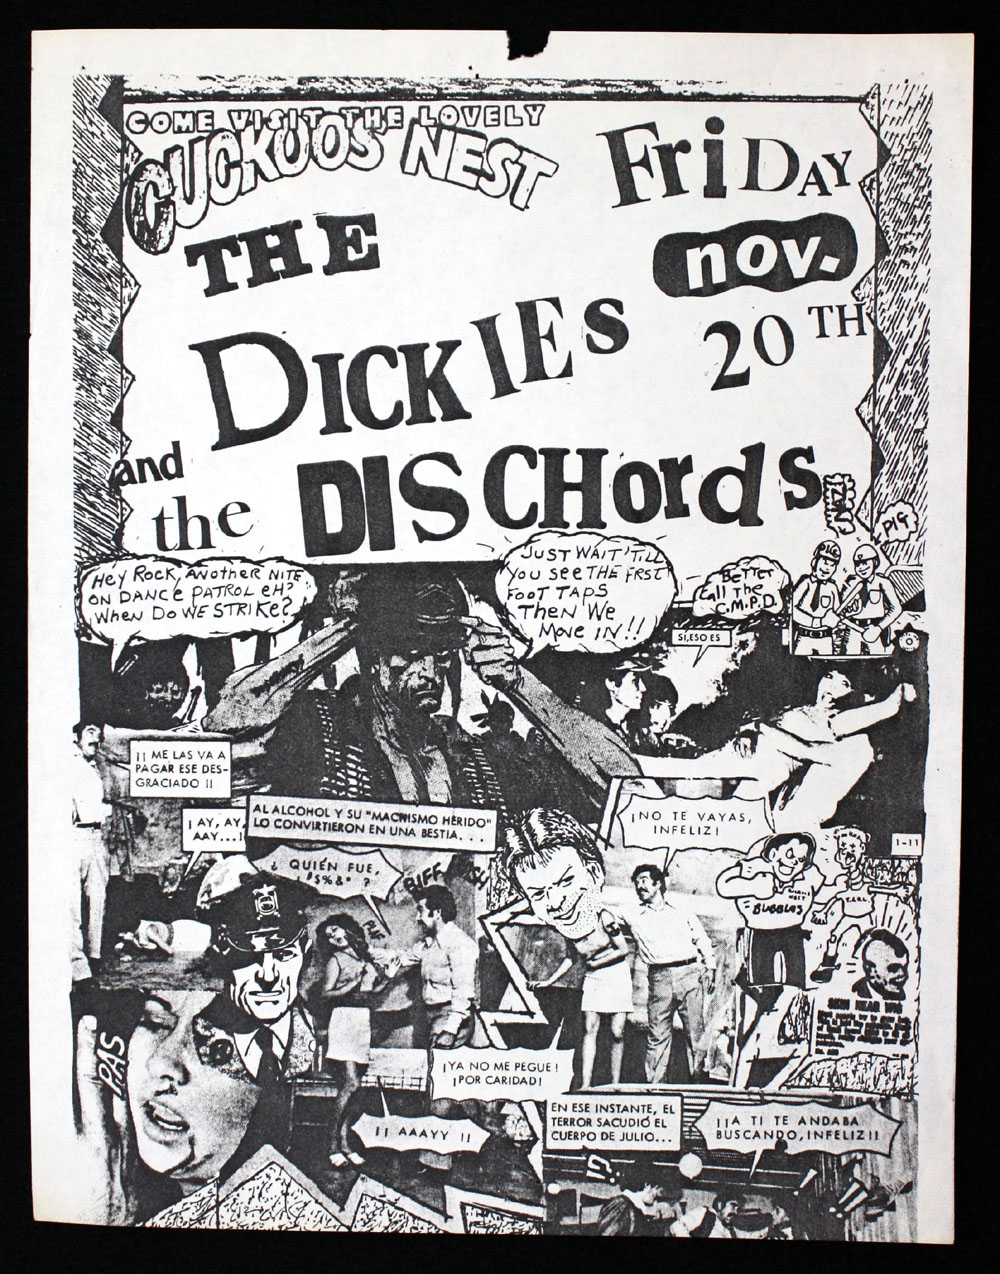 DICKIES w/ Dischords at Cuckoos Nest